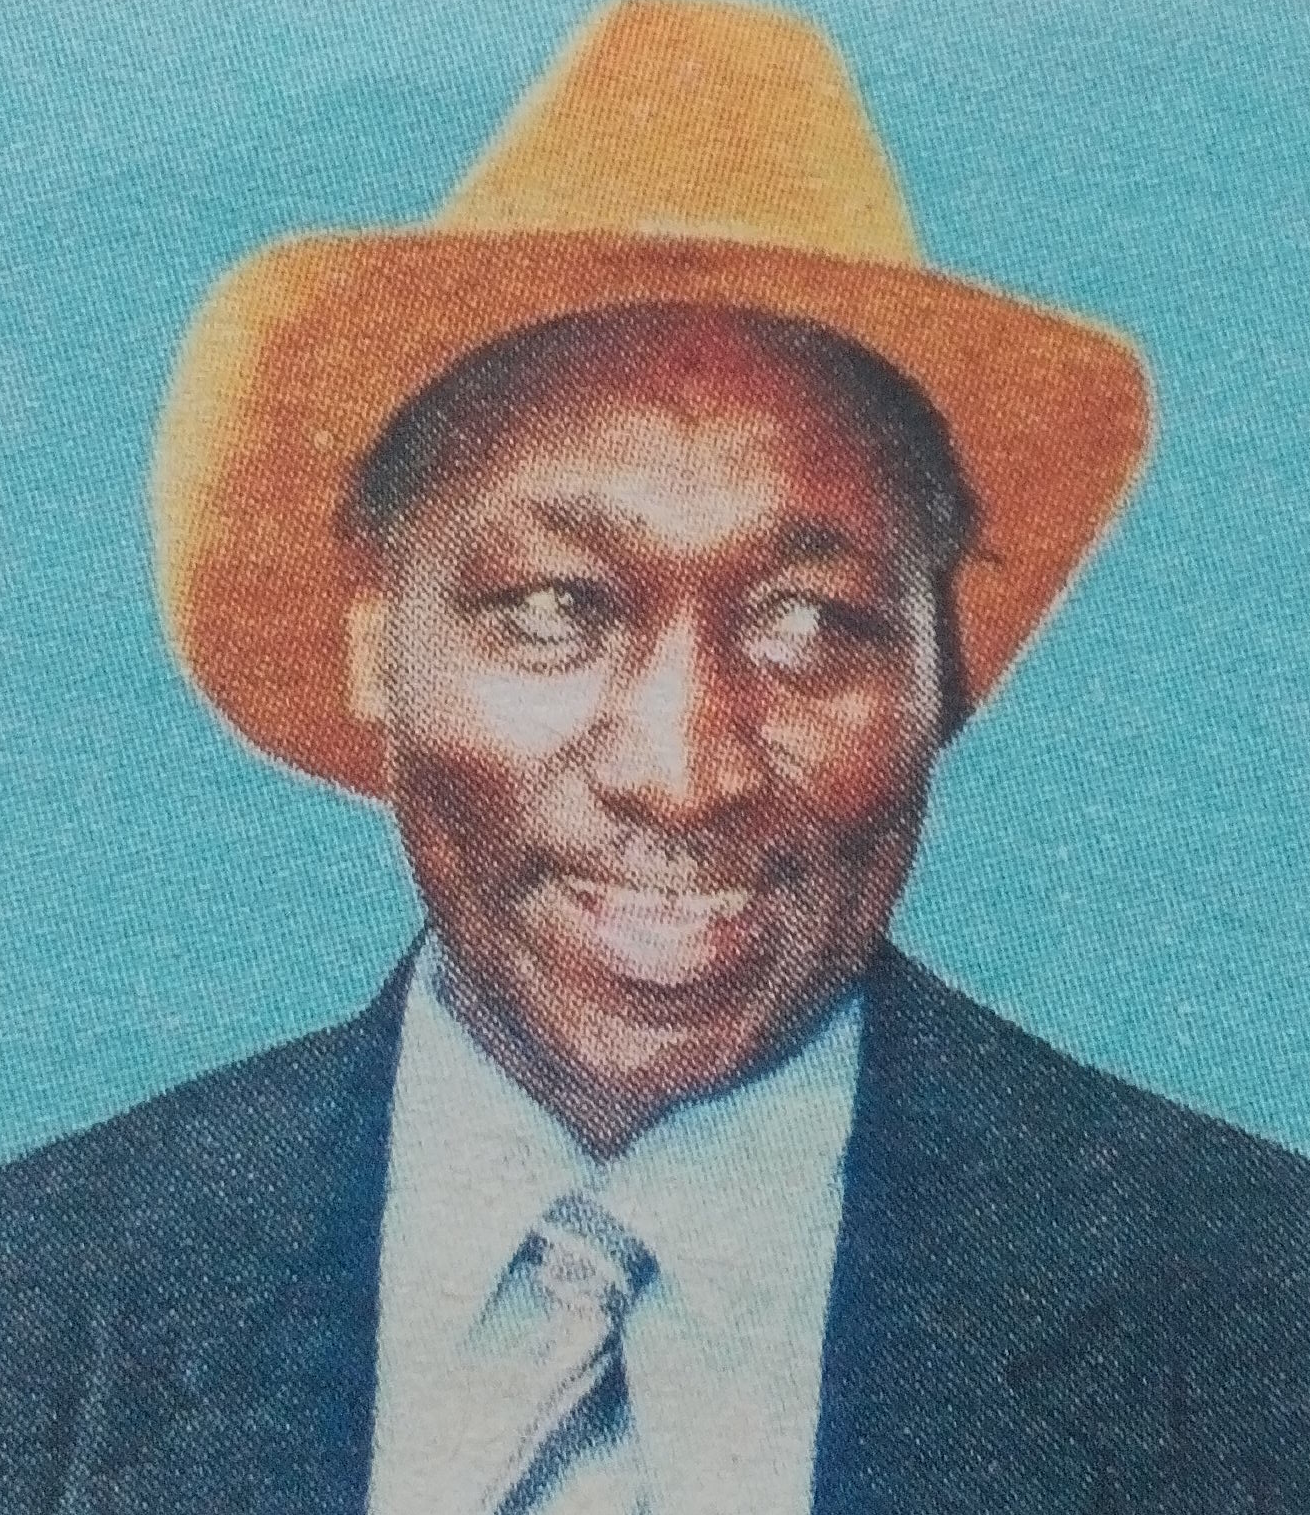 Obituary Image of Stephen Ndung’u Njogu